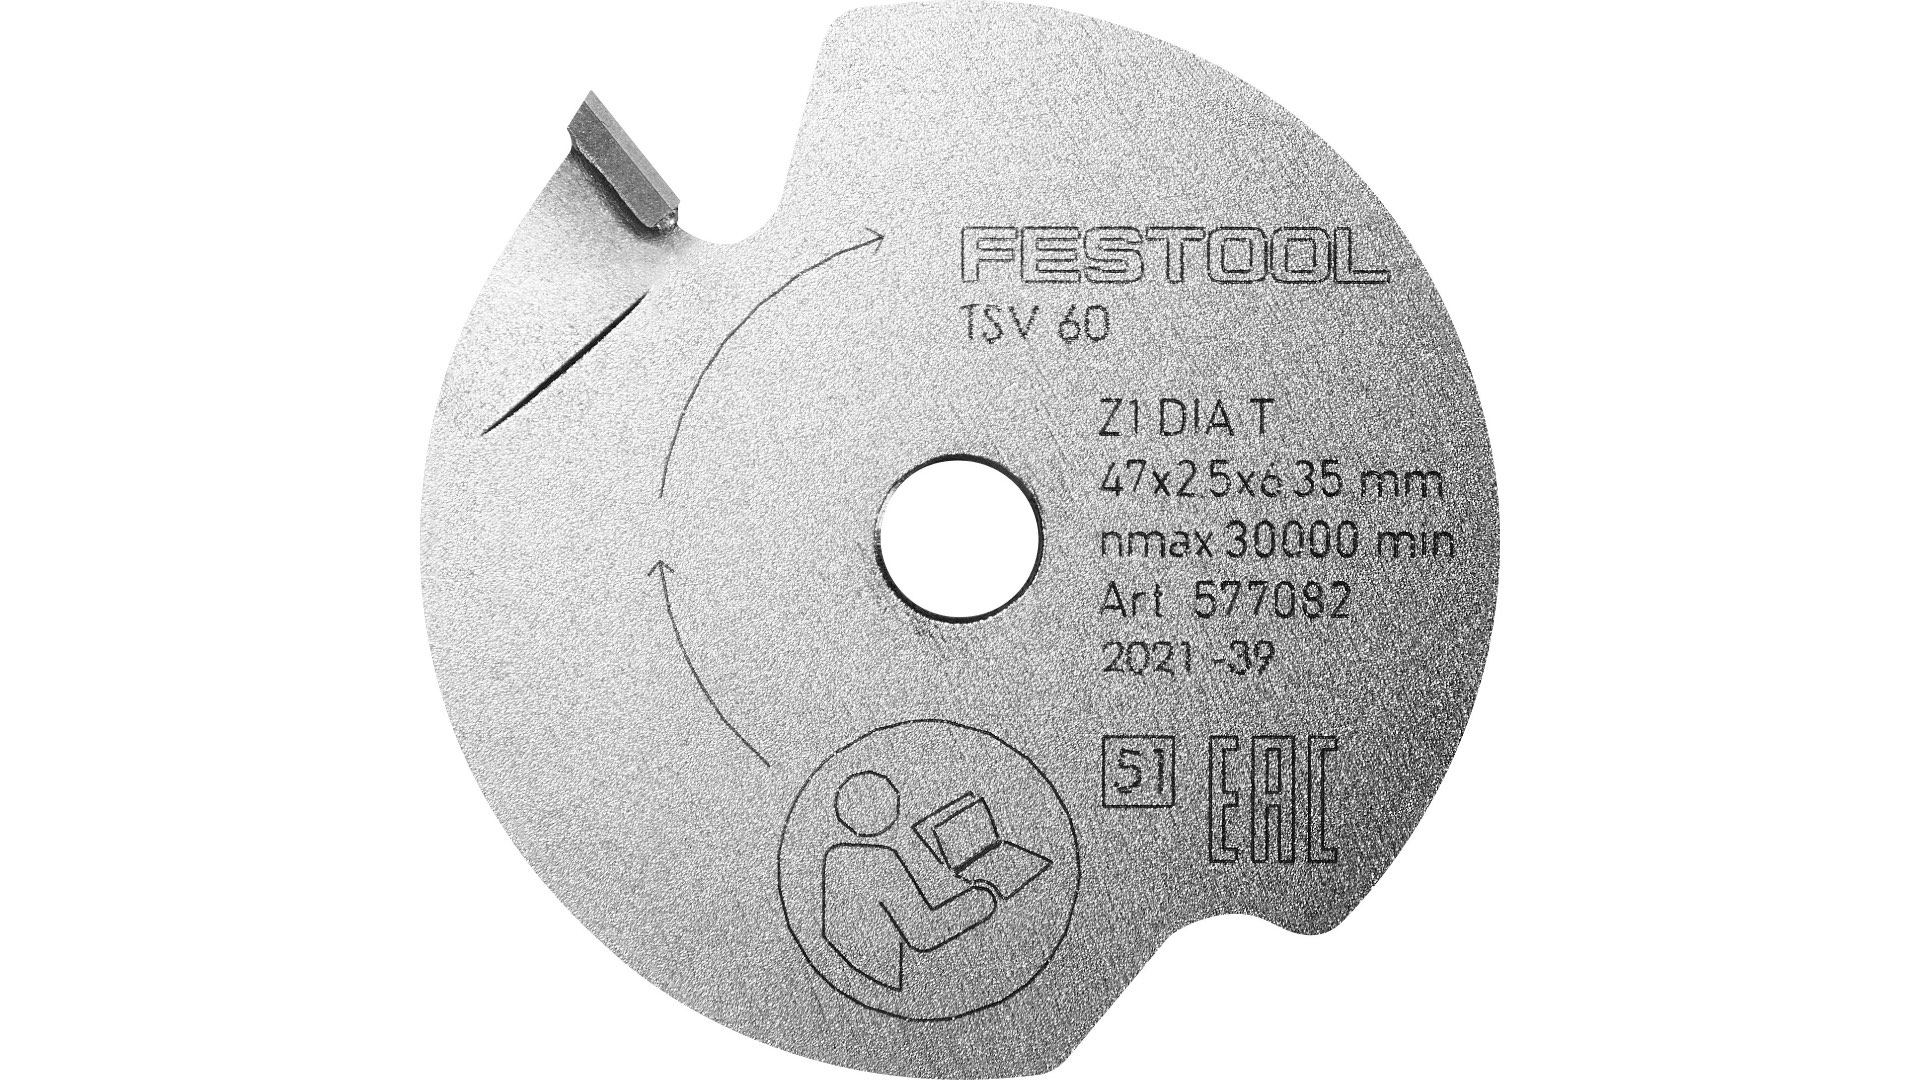 Пильный диск подрезной Festool DIA 47x2,5x6,35 T1 577082 подрезной конический пильный алмазный диск rotis